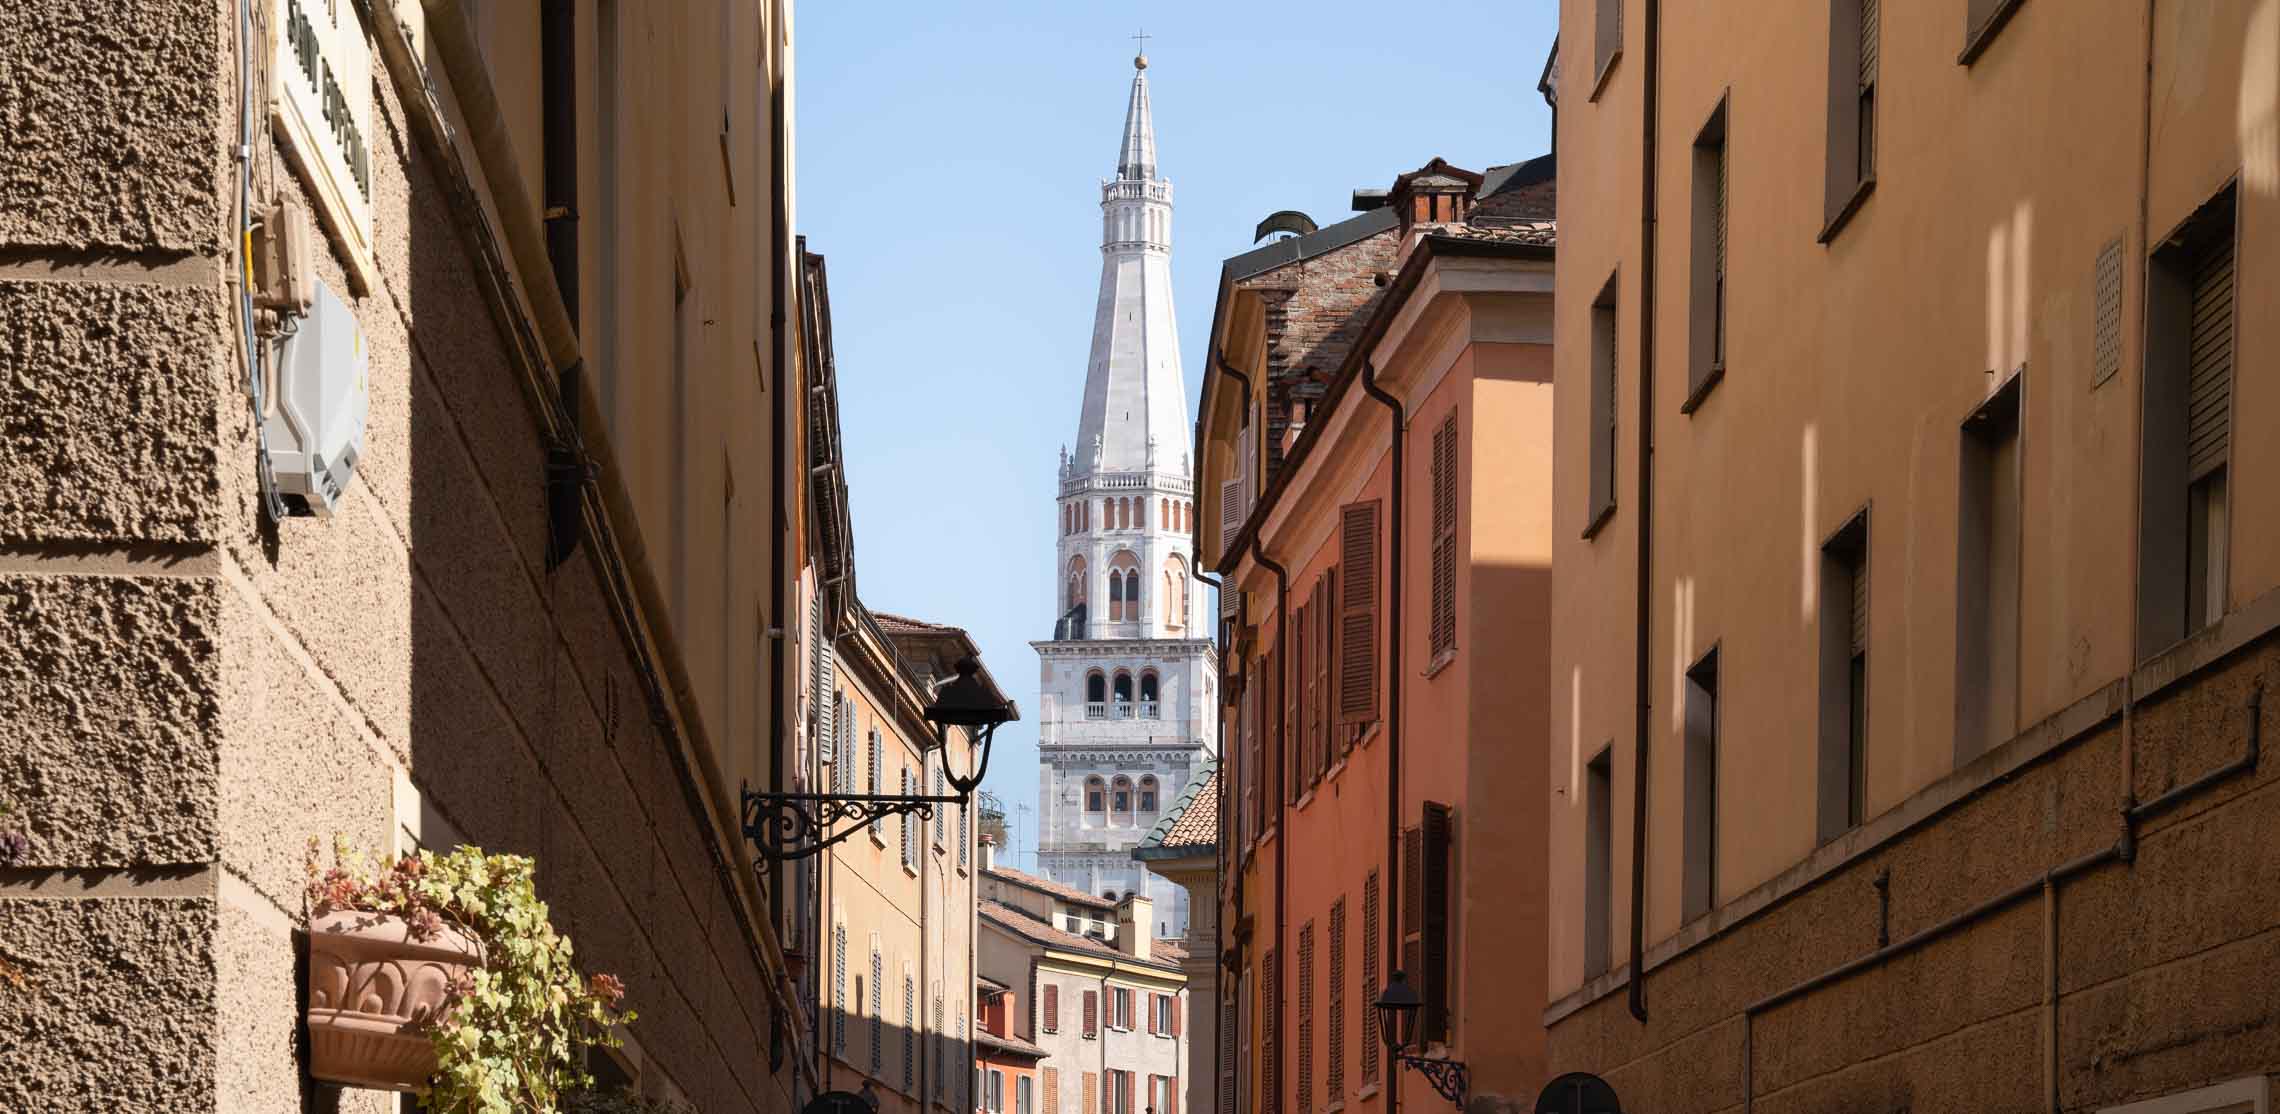 Blick auf die Torre Ghirlandina in Modena.